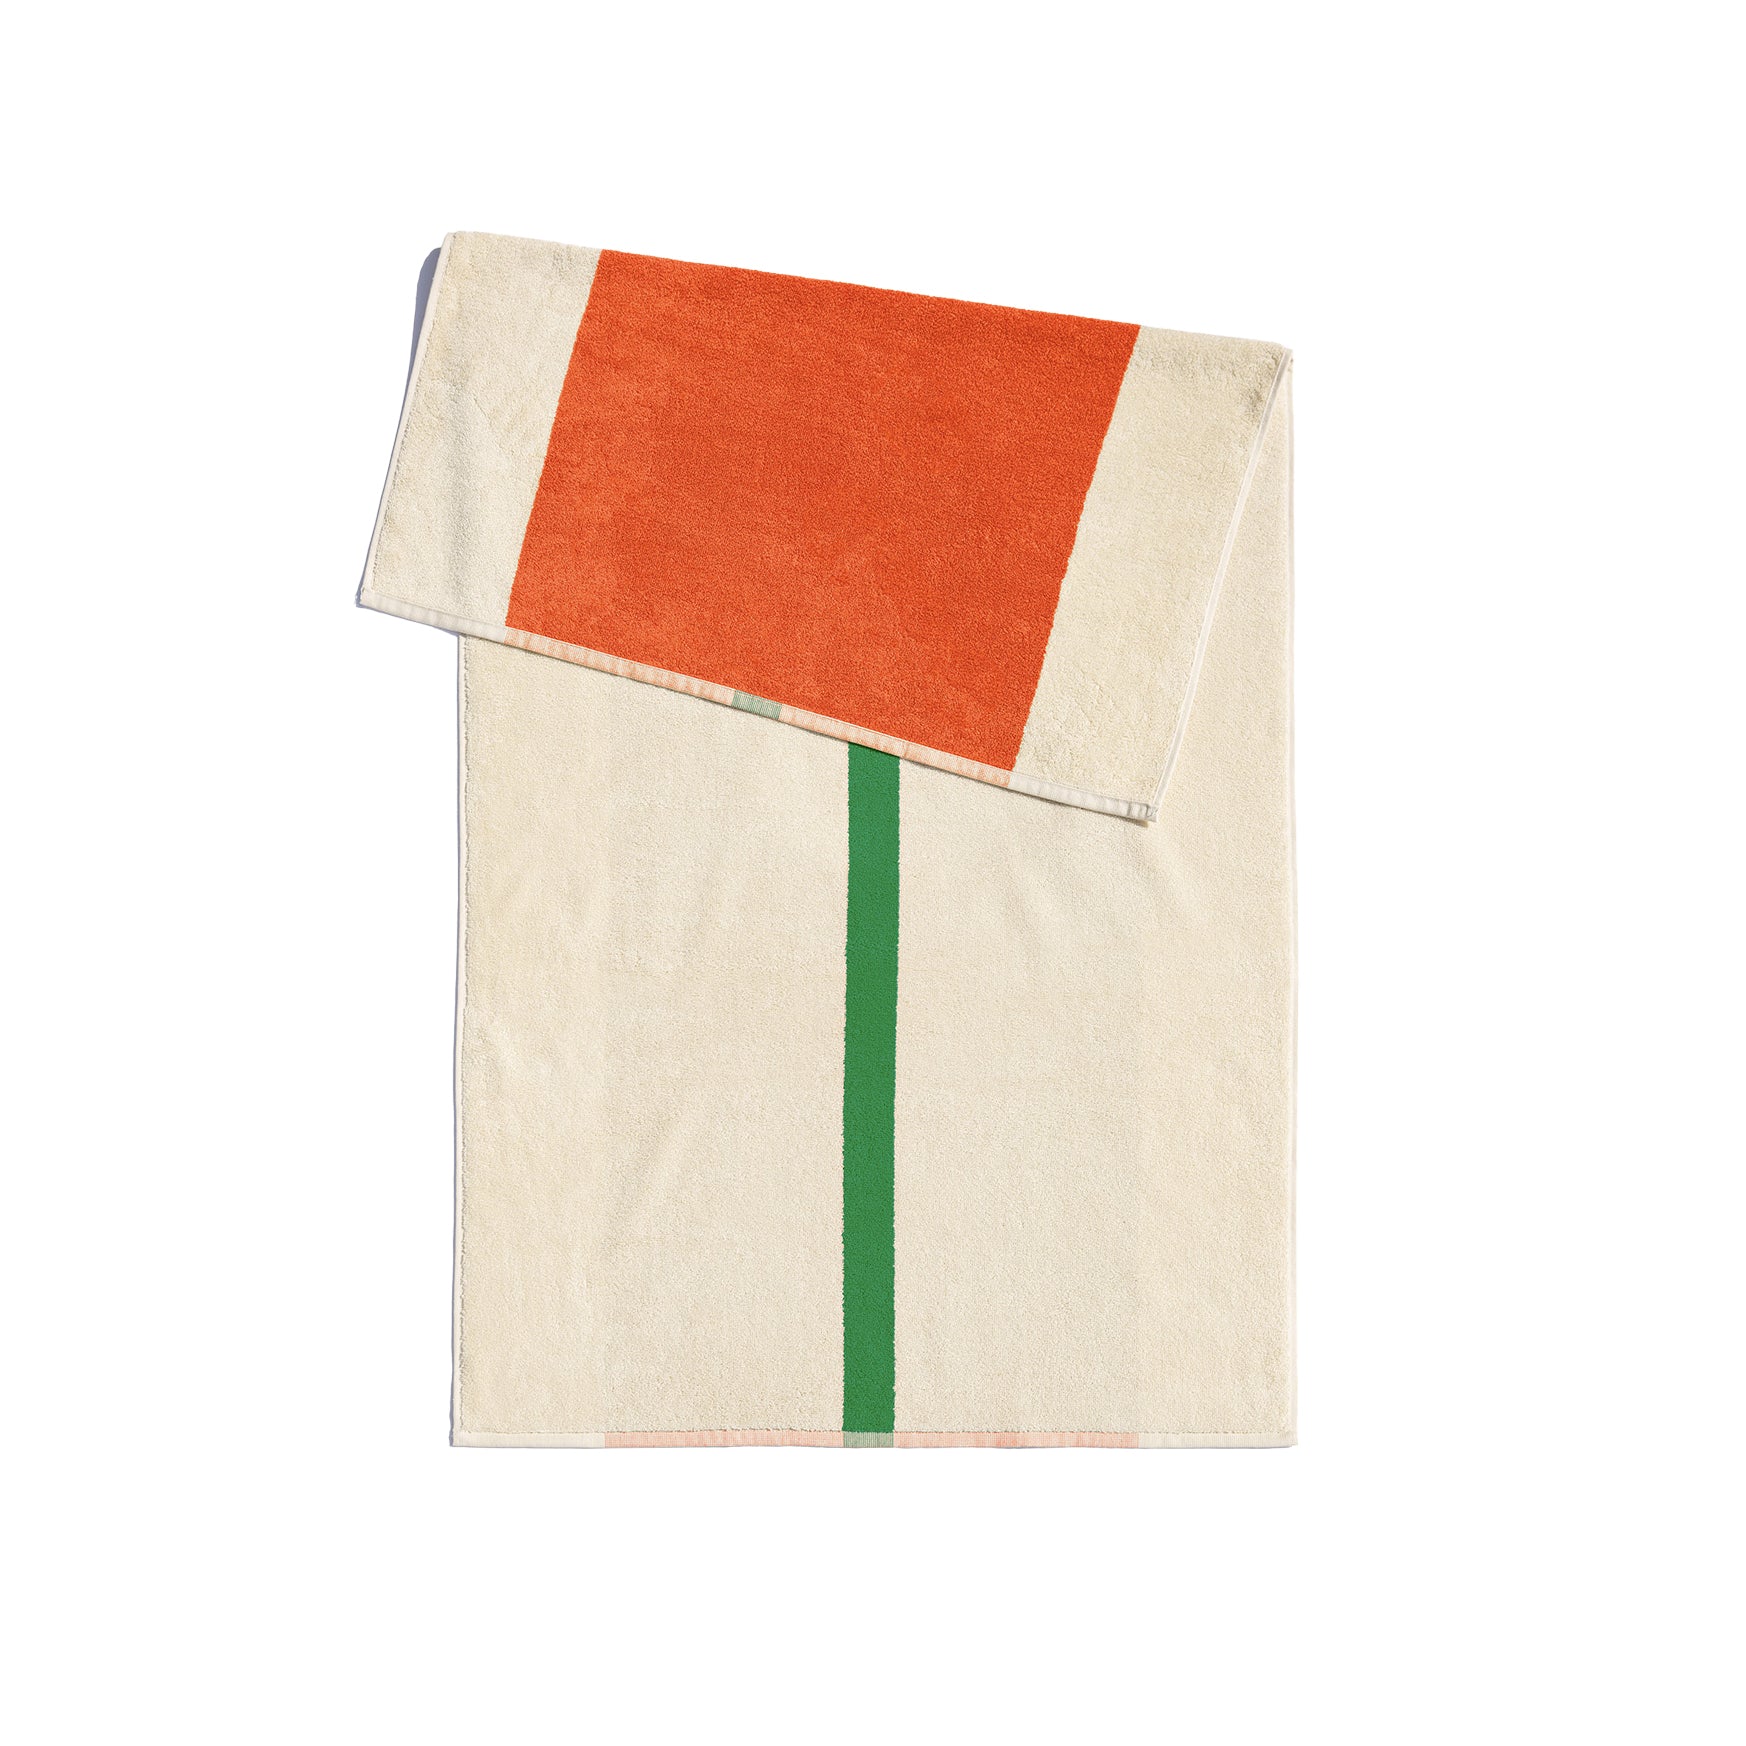 Handdoek 50x100 Orange&Green│Martens&Martens-Suite702│art. MMTT50ORGR│achterkant met witte achtergrond